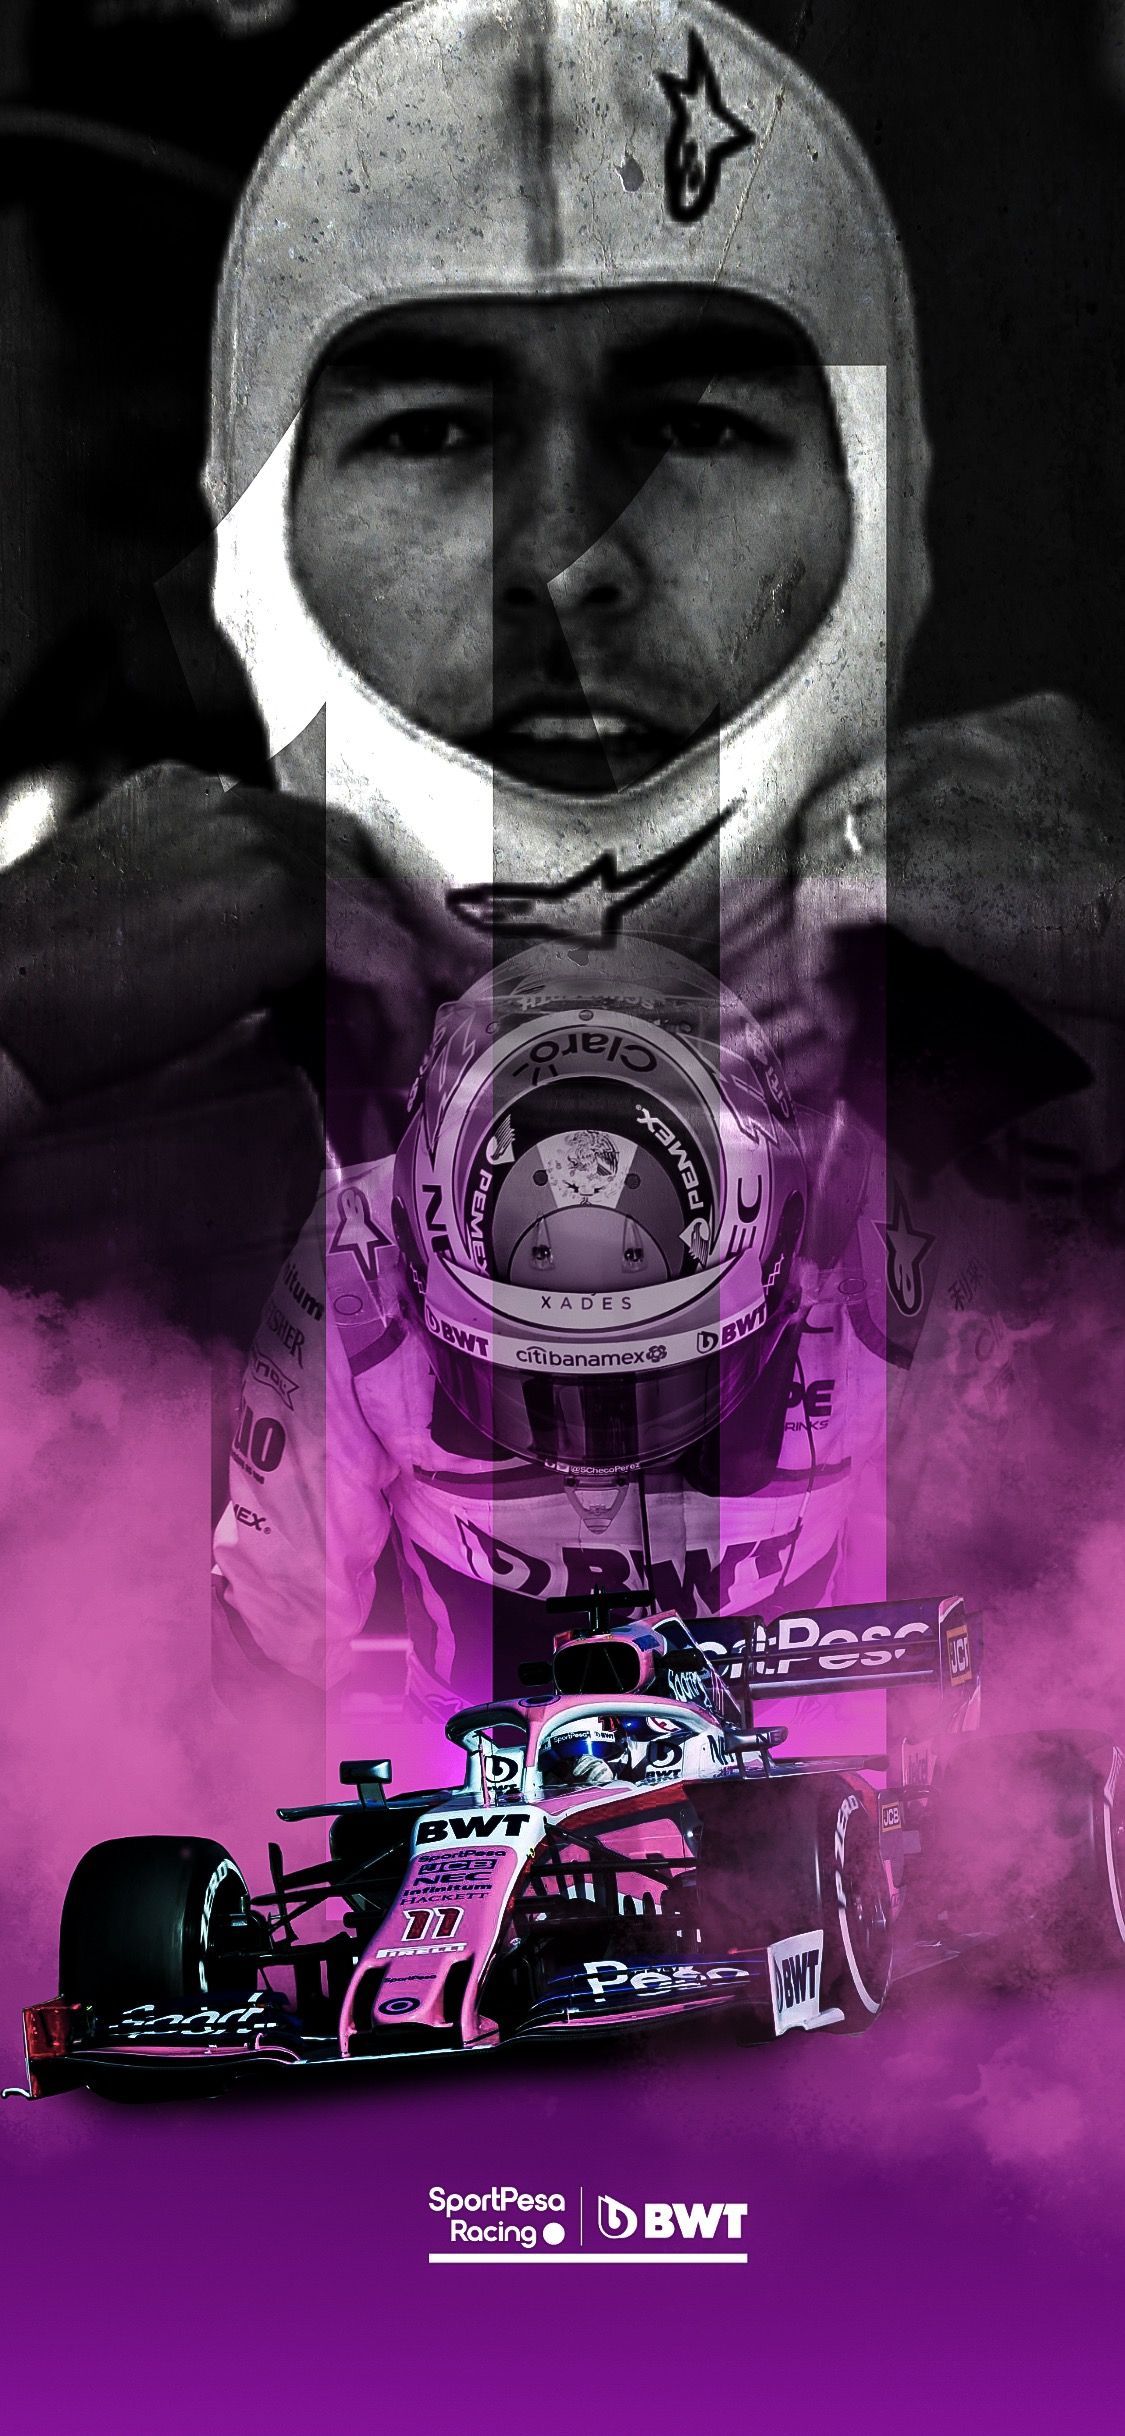 Sergio Perez Racing Point 2019. F1 wallpaper hd, Fondos de pantalla de coches, Fórmula 1